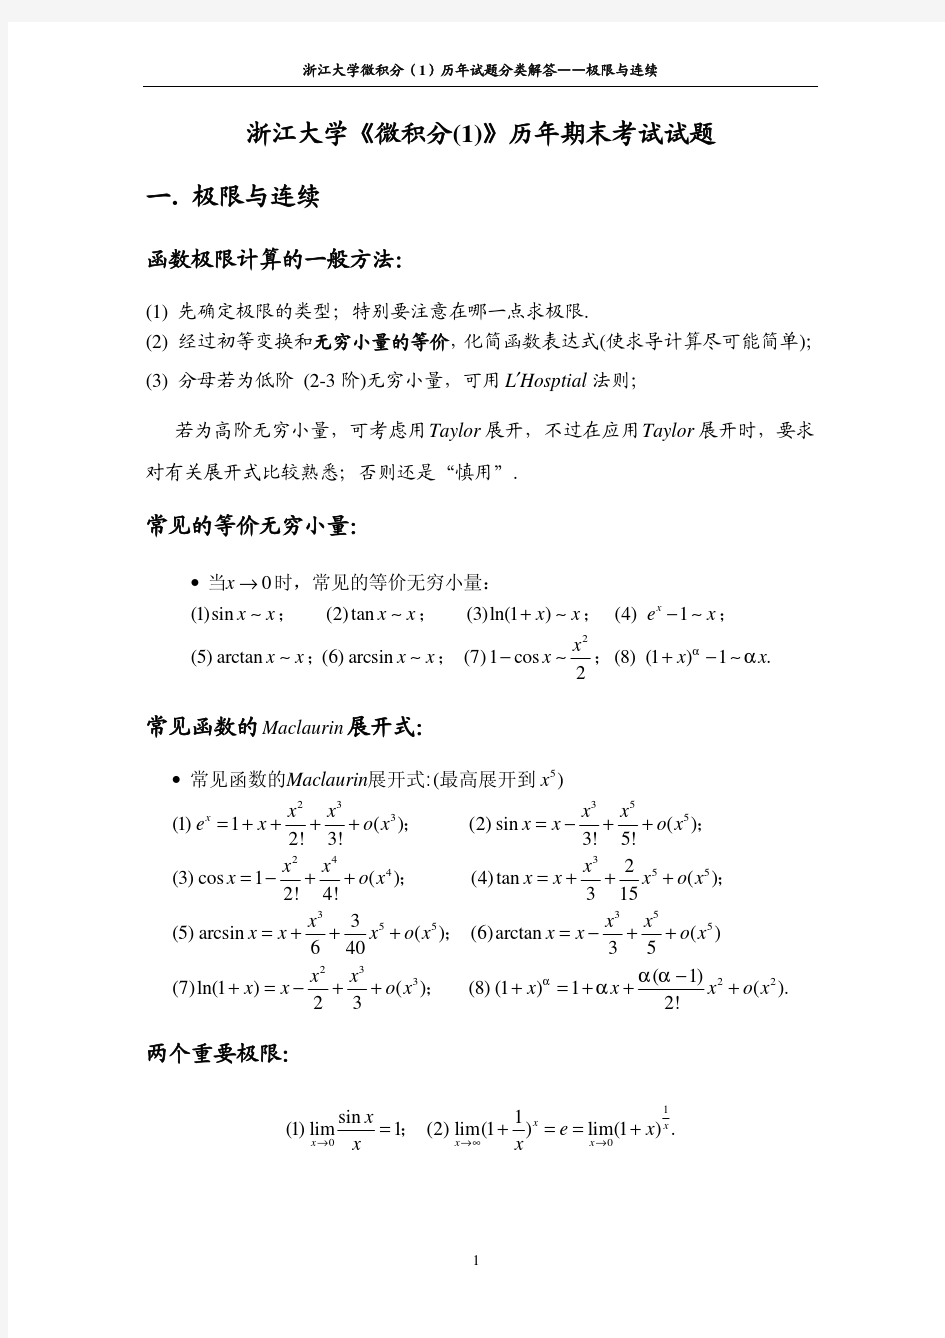 浙江大学历年微积分(1)试卷解答-极限与连续